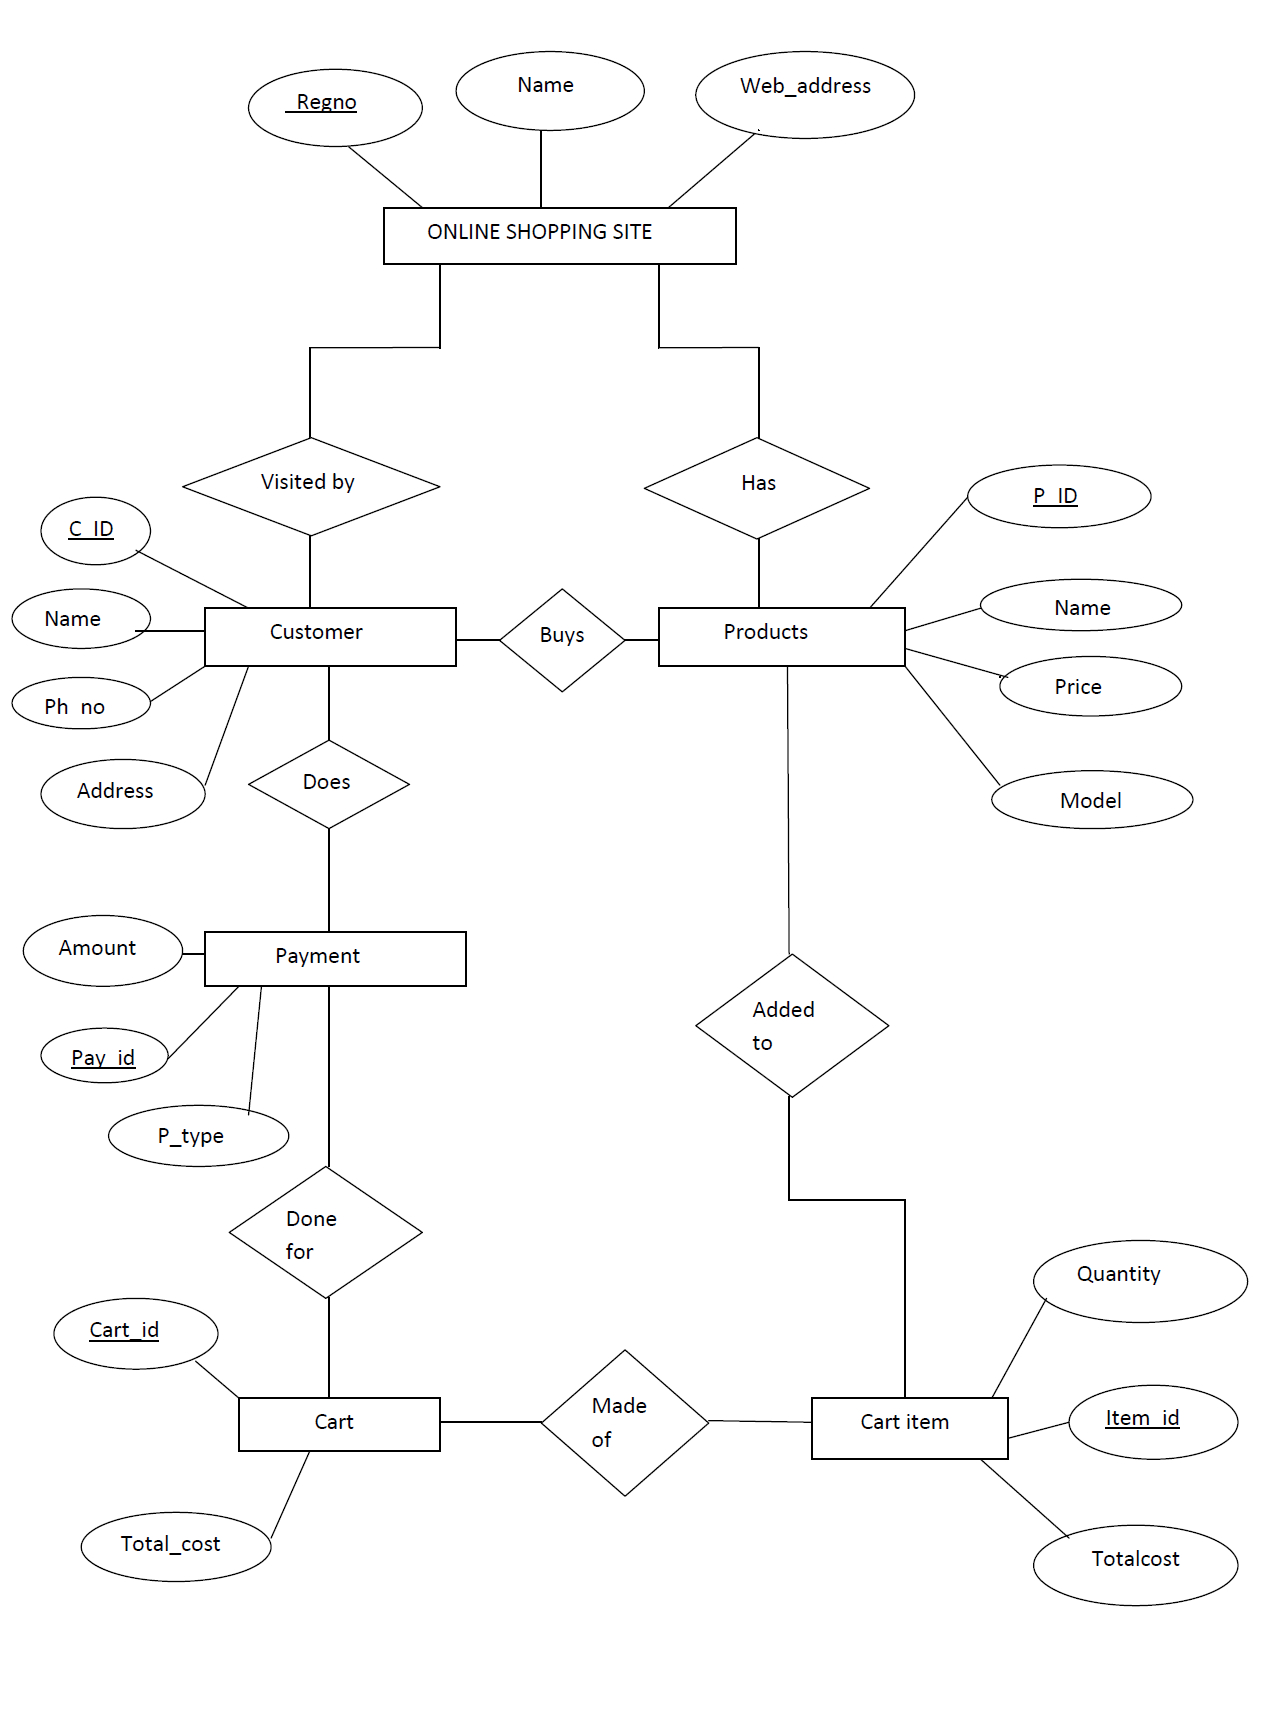 Mapping Er Diagram To Relational Model (Rollno:50) | Lbs inside Er Diagram For Online Shopping